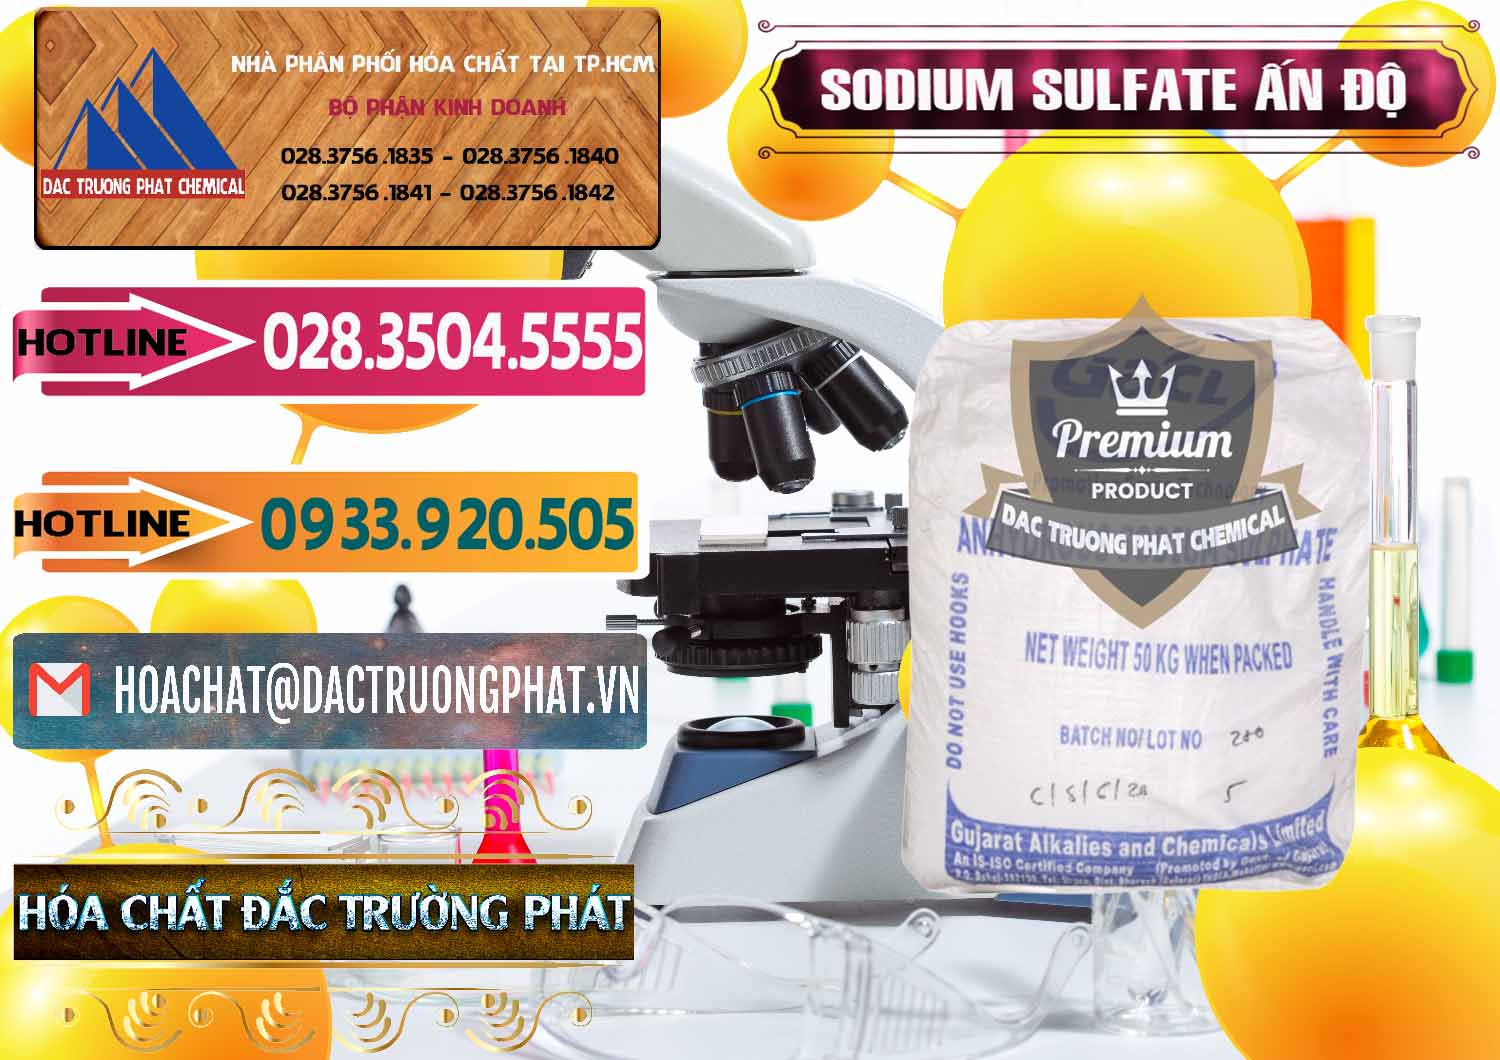 Đơn vị chuyên bán - cung cấp Sodium Sulphate - Muối Sunfat Na2SO4 GACL Ấn Độ India - 0461 - Nơi cung cấp ( phân phối ) hóa chất tại TP.HCM - dactruongphat.vn